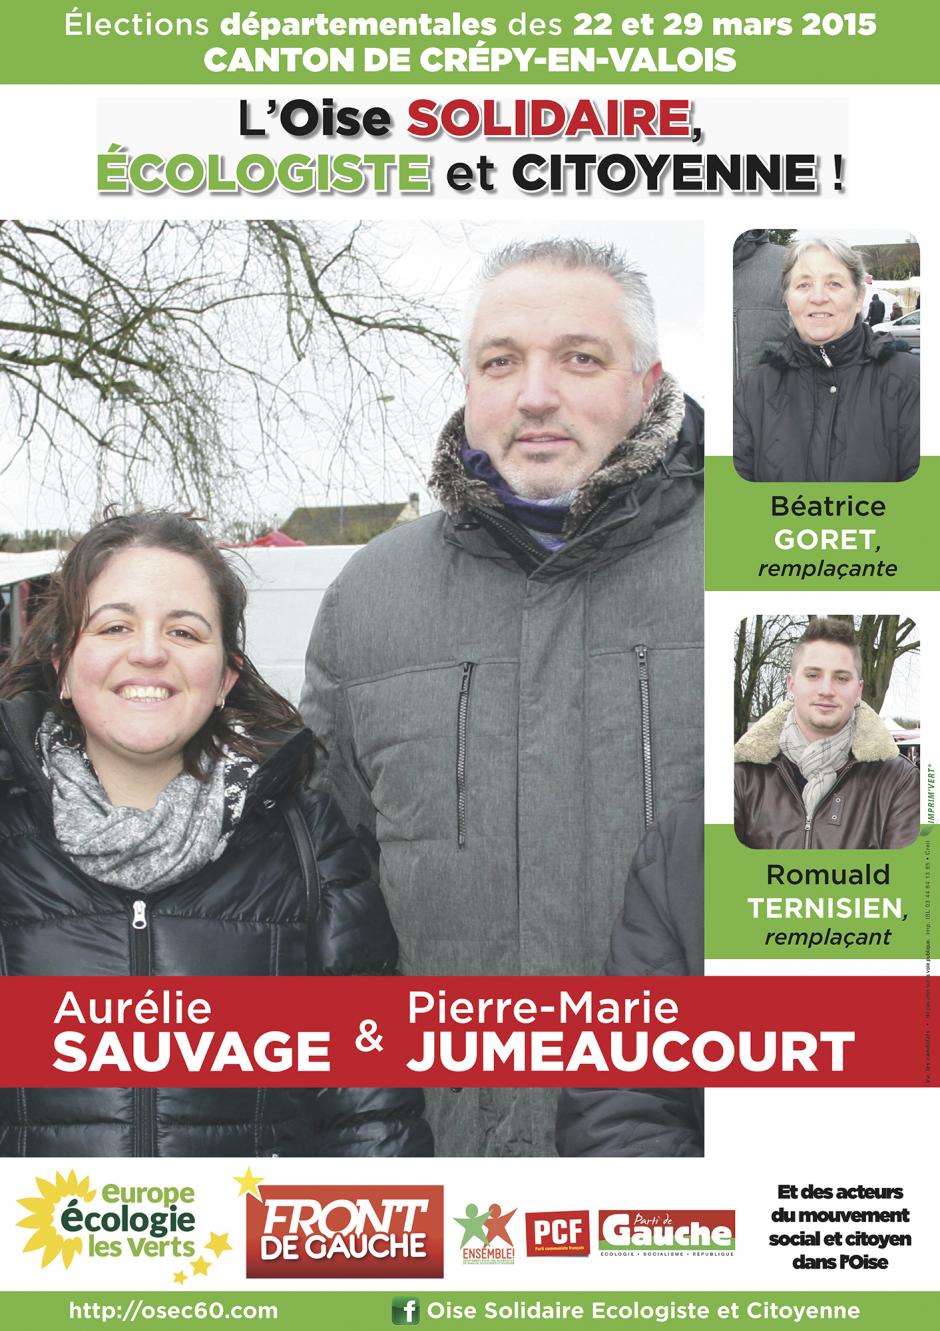 11 mars, Trumilly - Rencontre avec les candidats du canton de Crépy-en-Valois